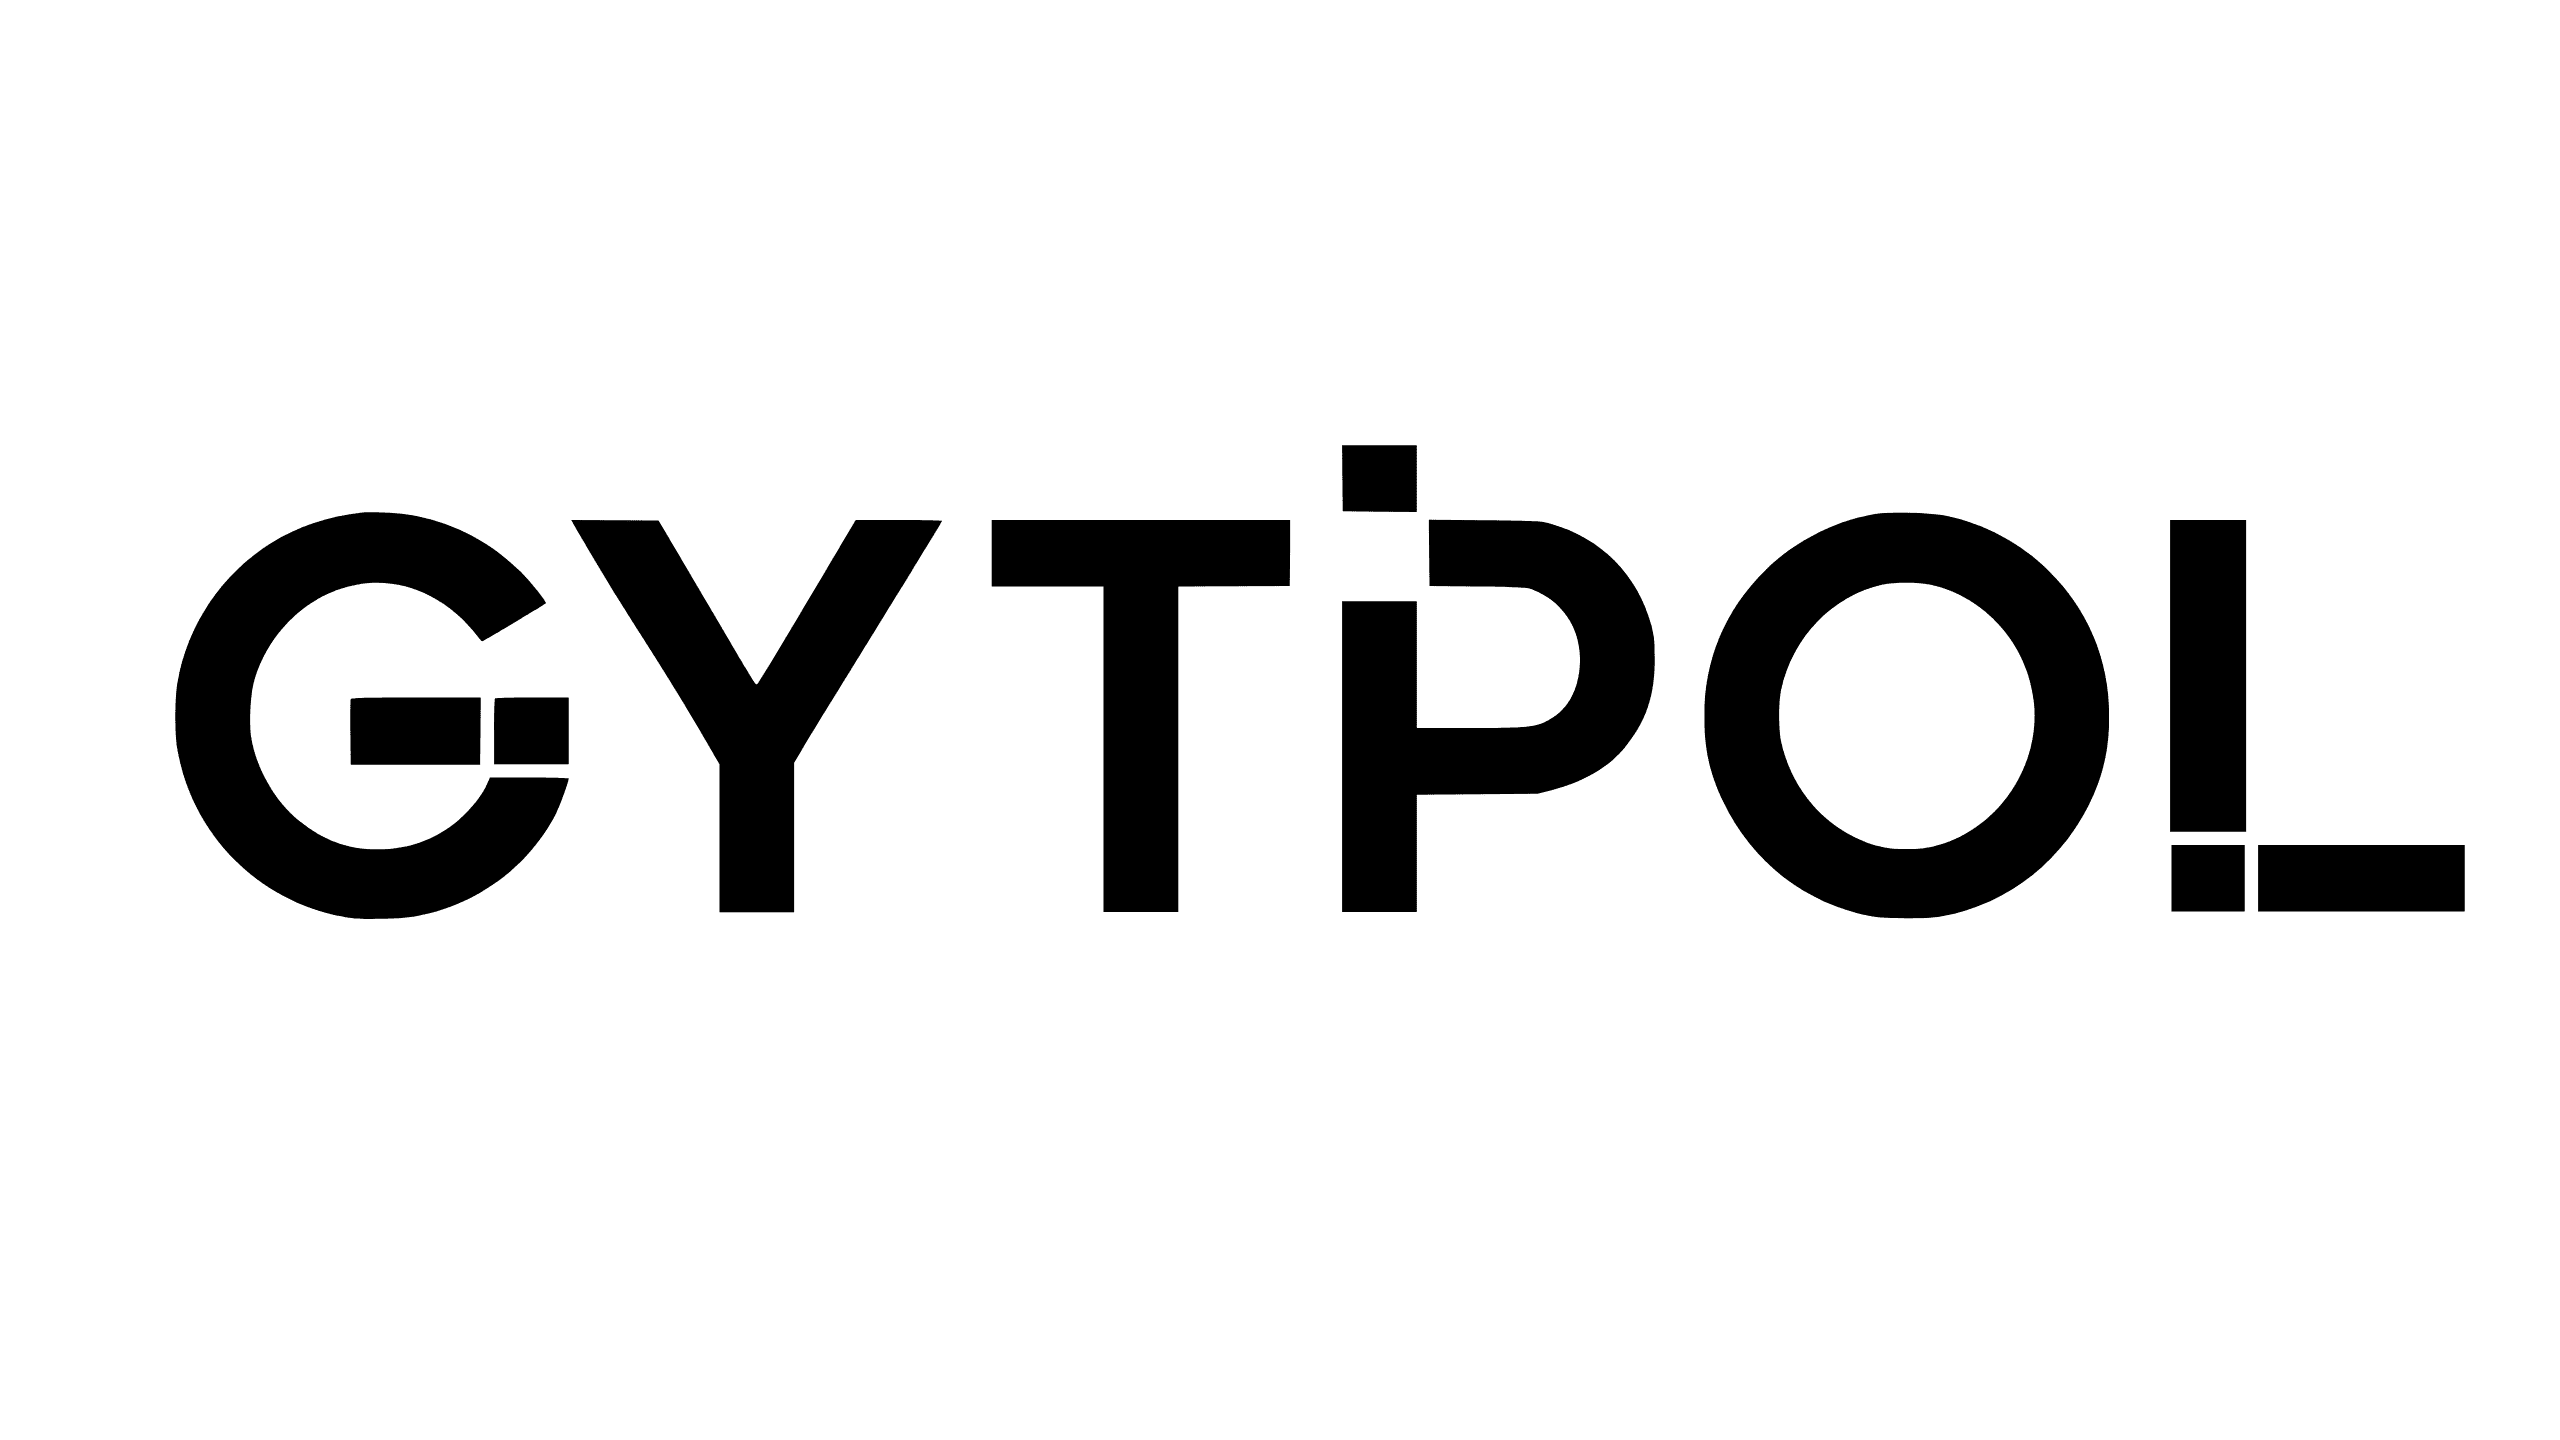 gytpol logo